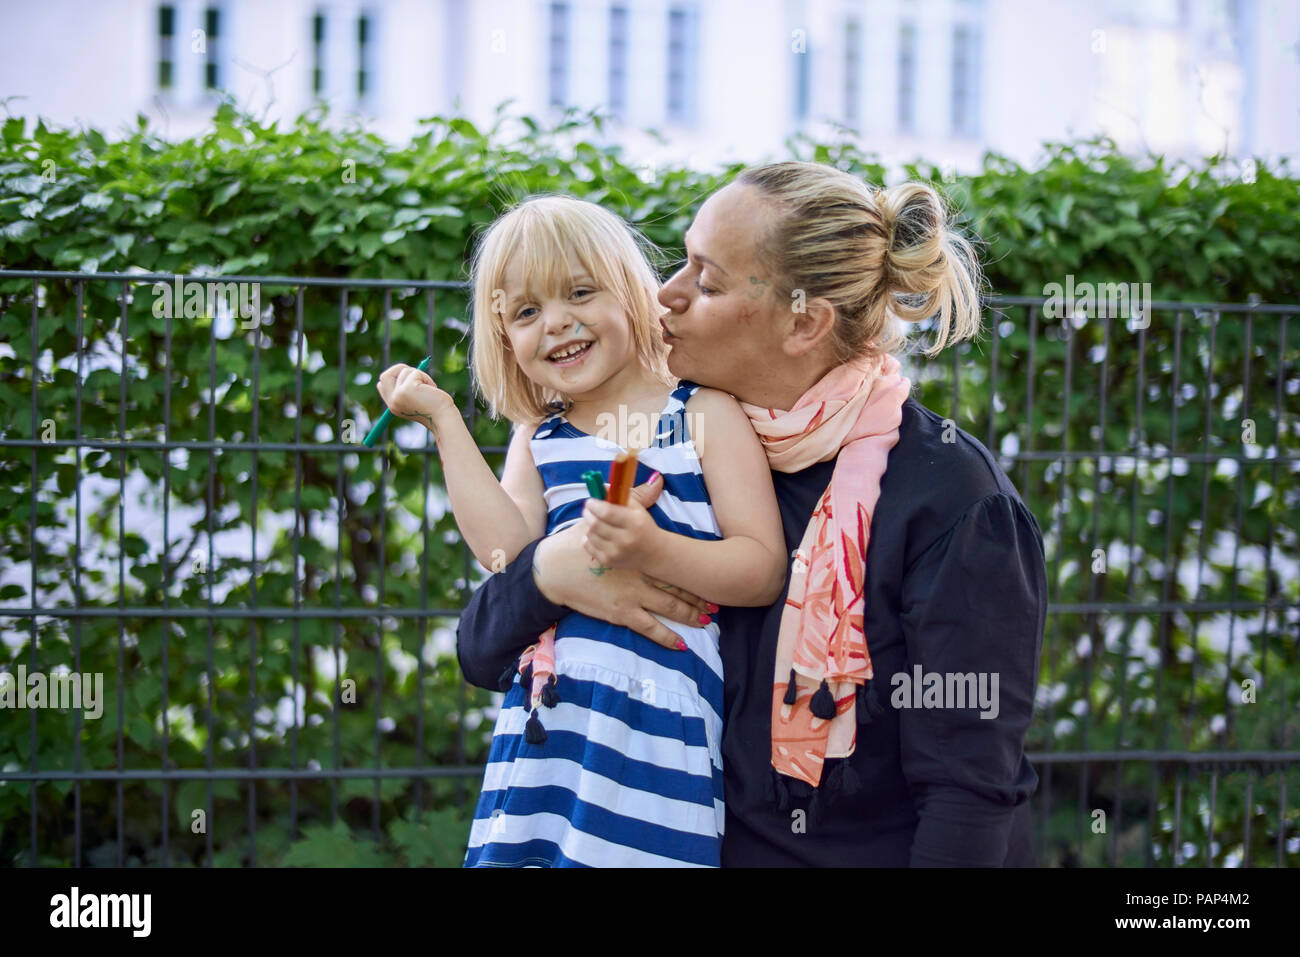 Ritratto di ridere bambina con la faccia dipinta in sua madre del braccio Foto Stock